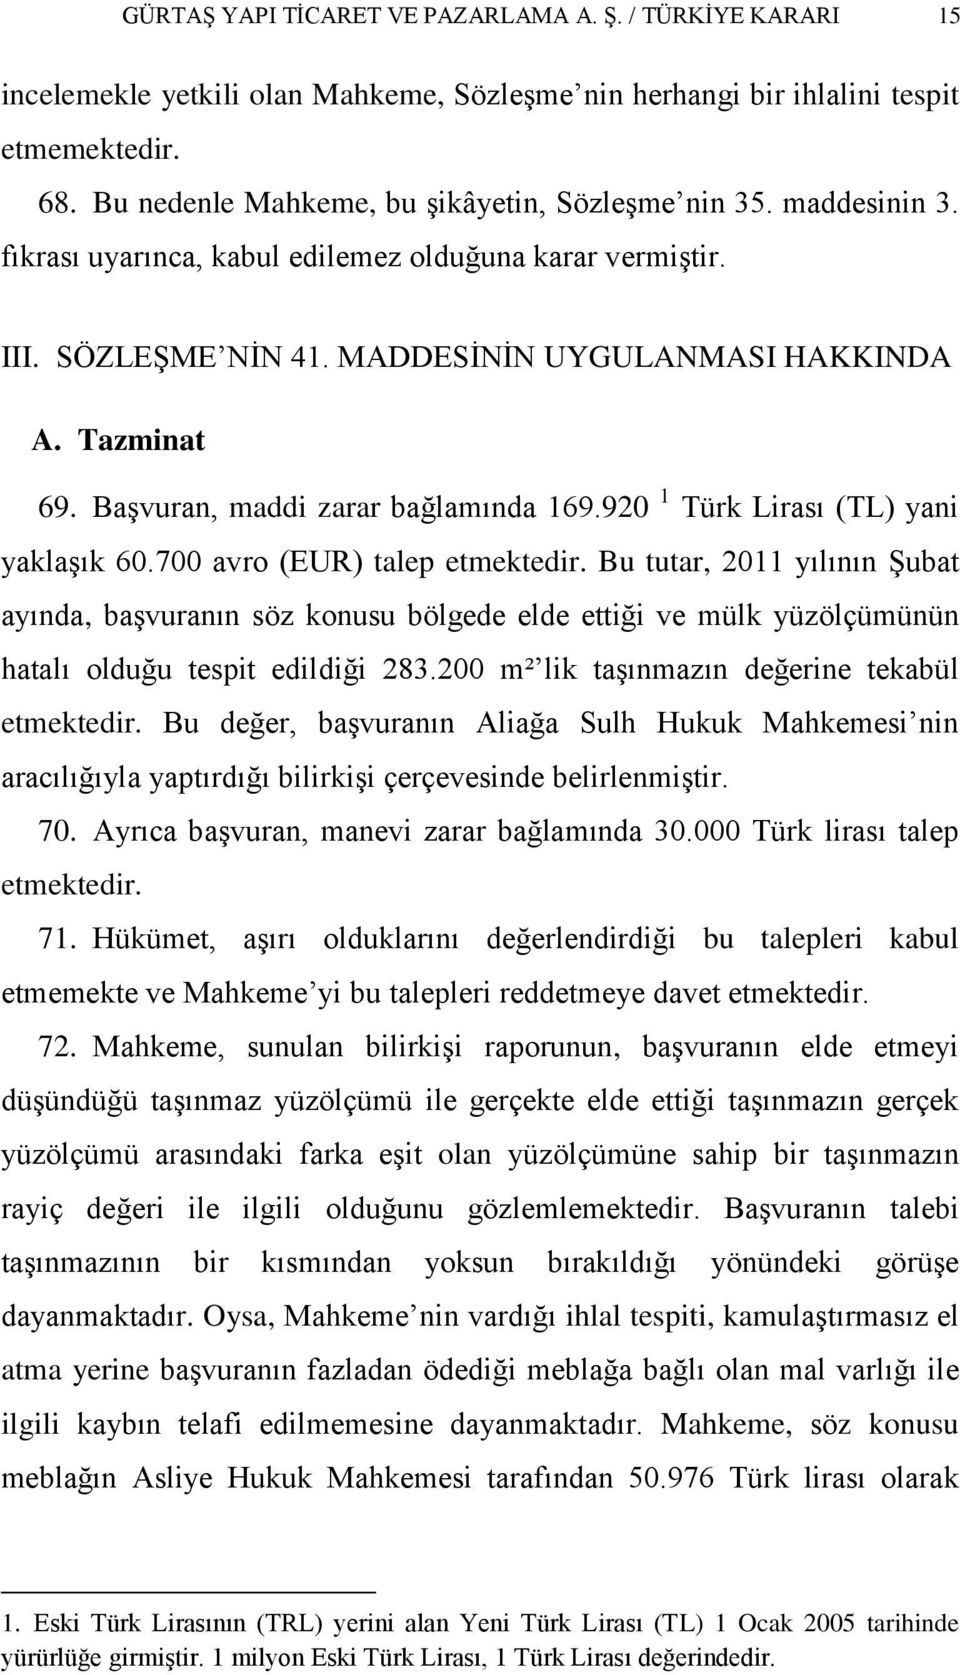 BaĢvuran, maddi zarar bağlamında 169.920 1 Türk Lirası (TL) yani yaklaģık 60.700 avro (EUR) talep etmektedir.